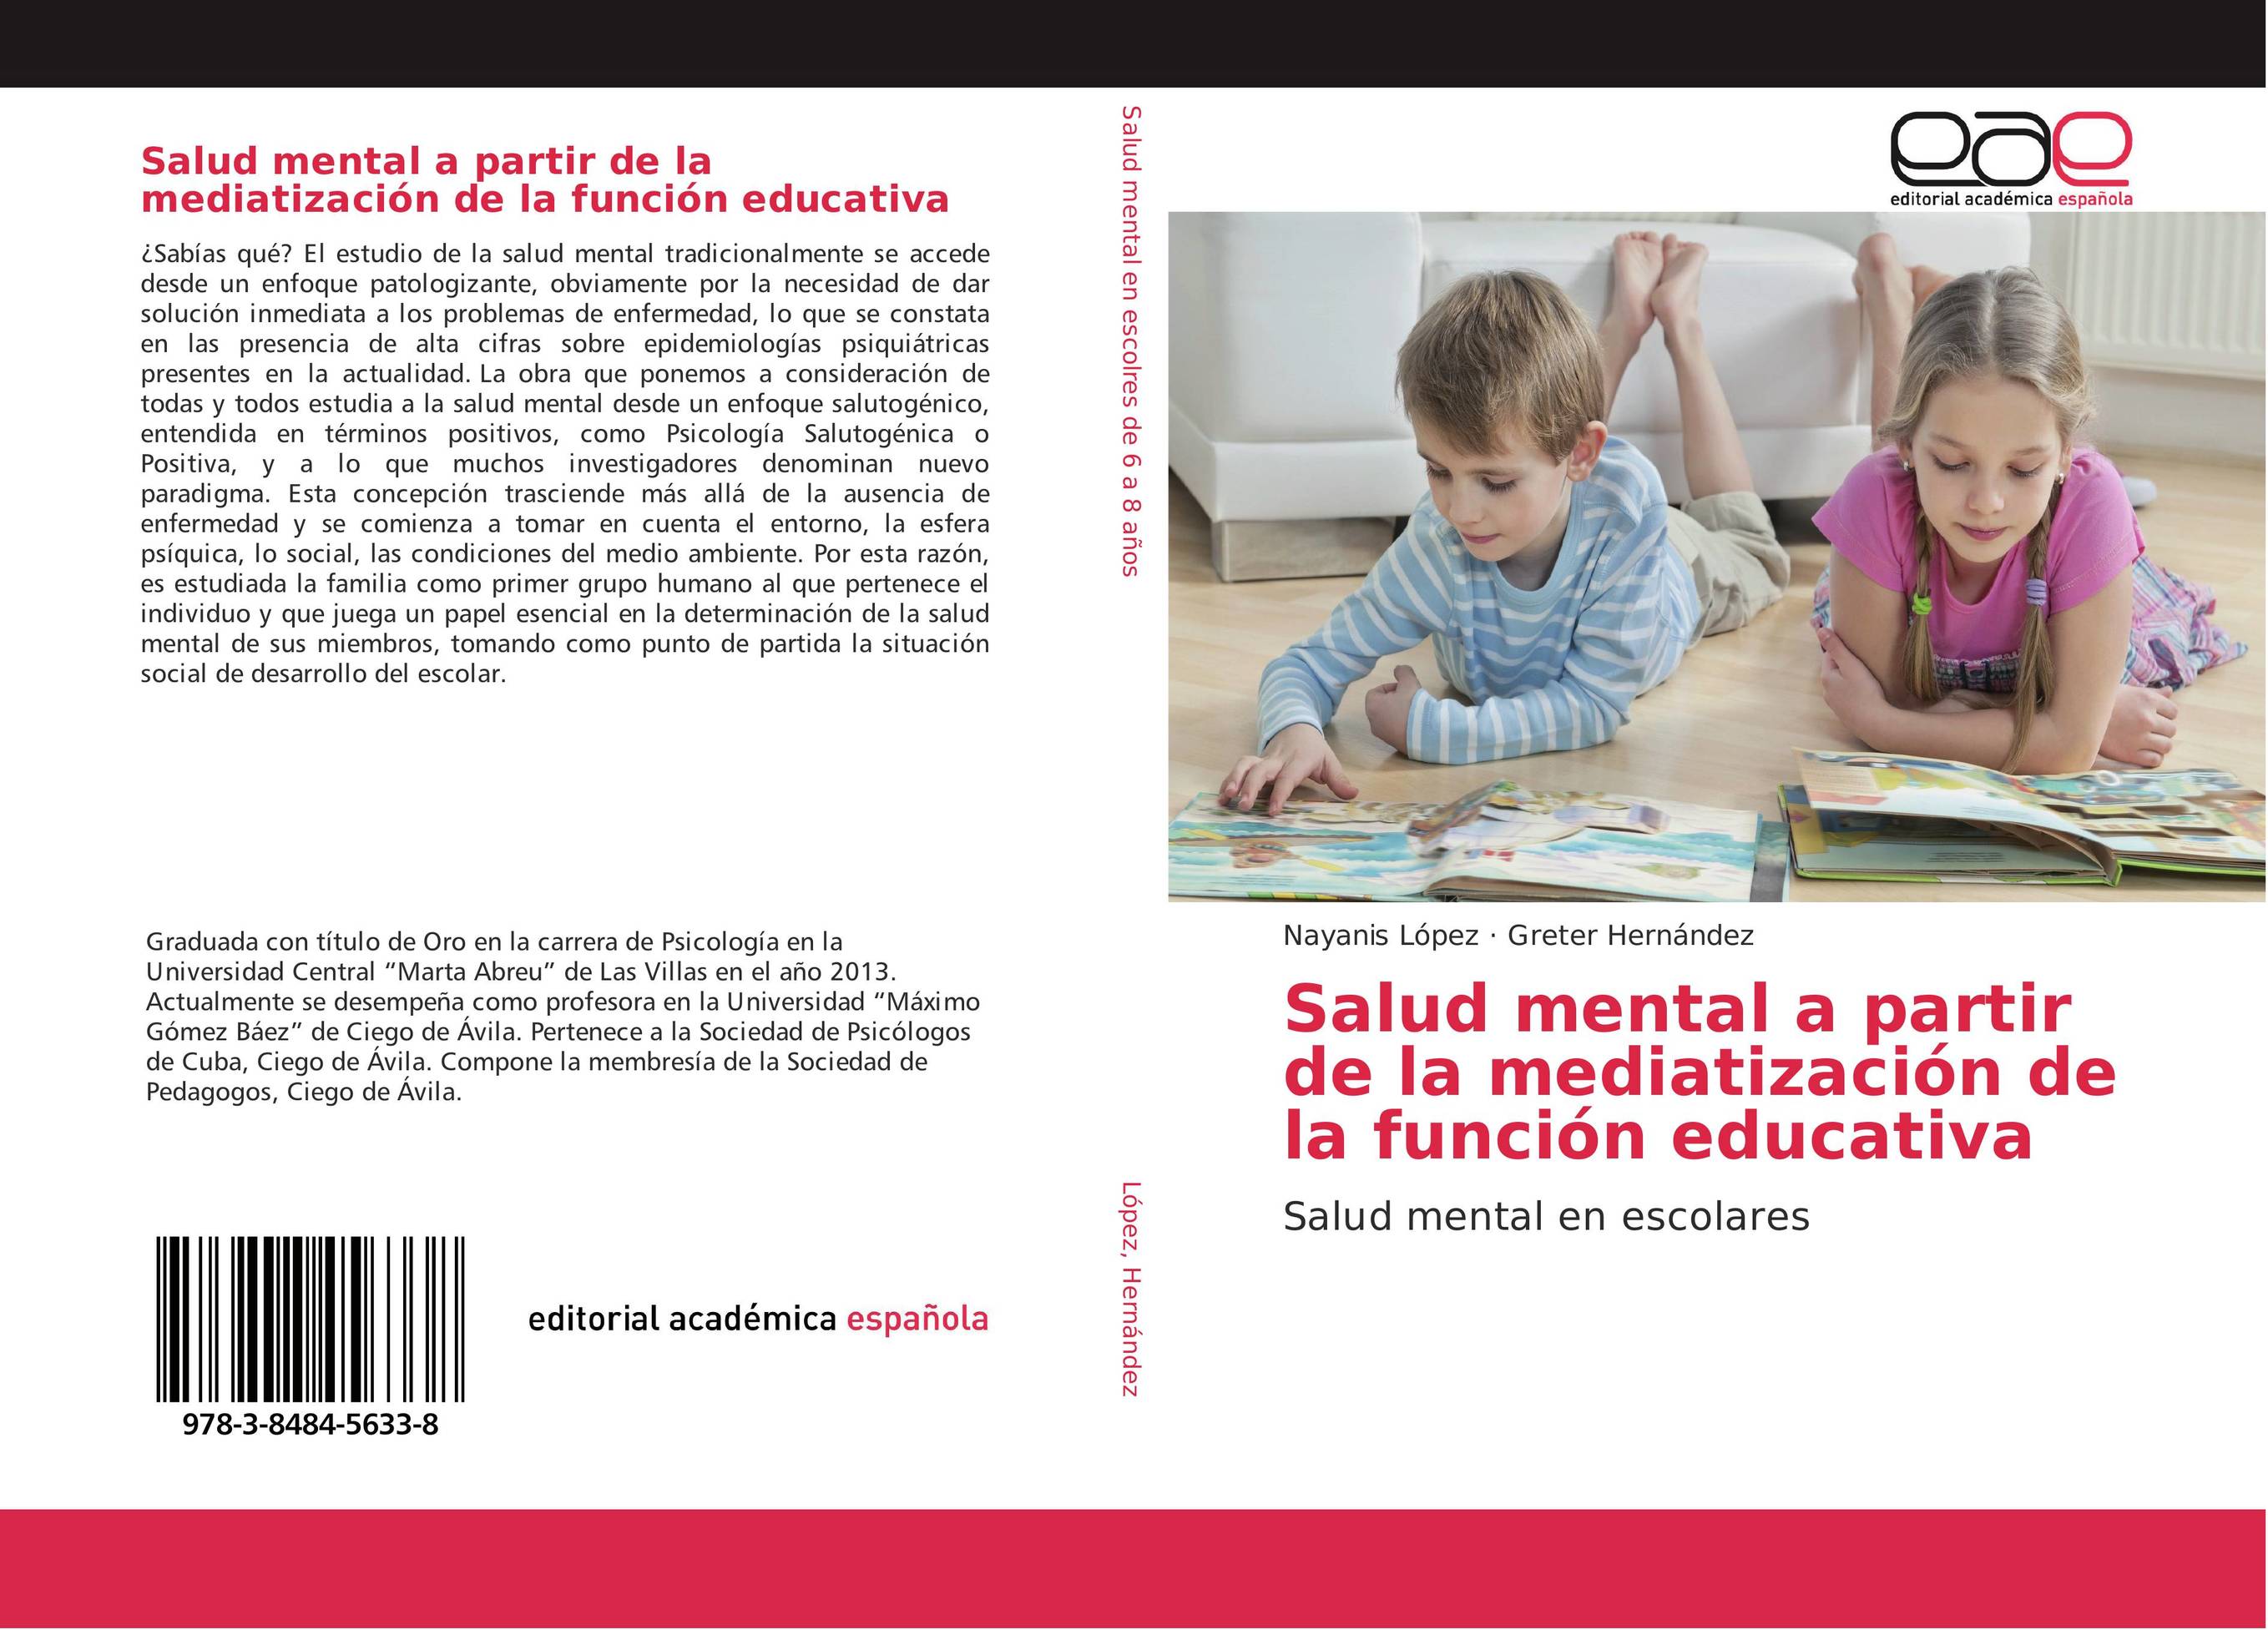 Salud mental a partir de la mediatización de la función educativa